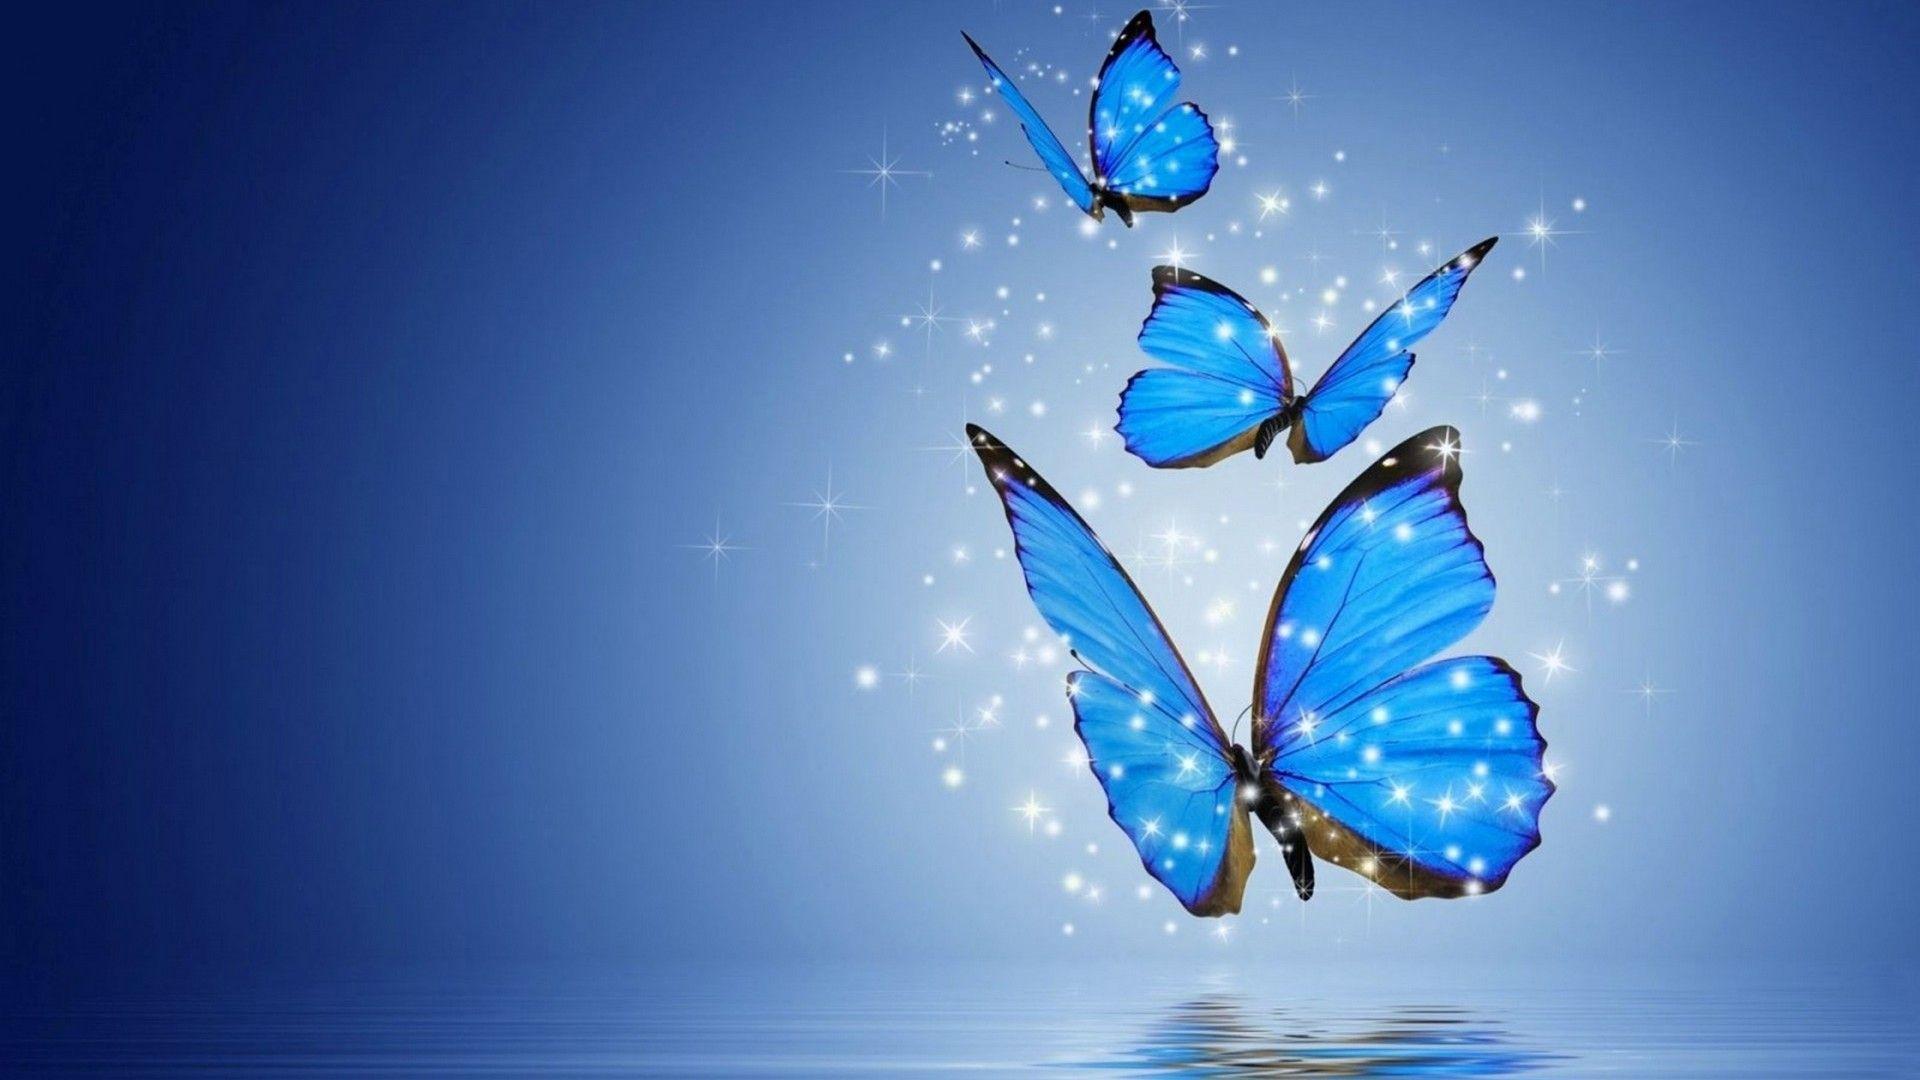 Hình nền bướm xanh sẽ làm cho màn hình điện thoại của bạn trở nên độc đáo và đẹp mắt. Hãy tải hình nền bướm xanh ngay để cảm nhận được sự bình yên và thanh tịnh mà bức ảnh mang lại.